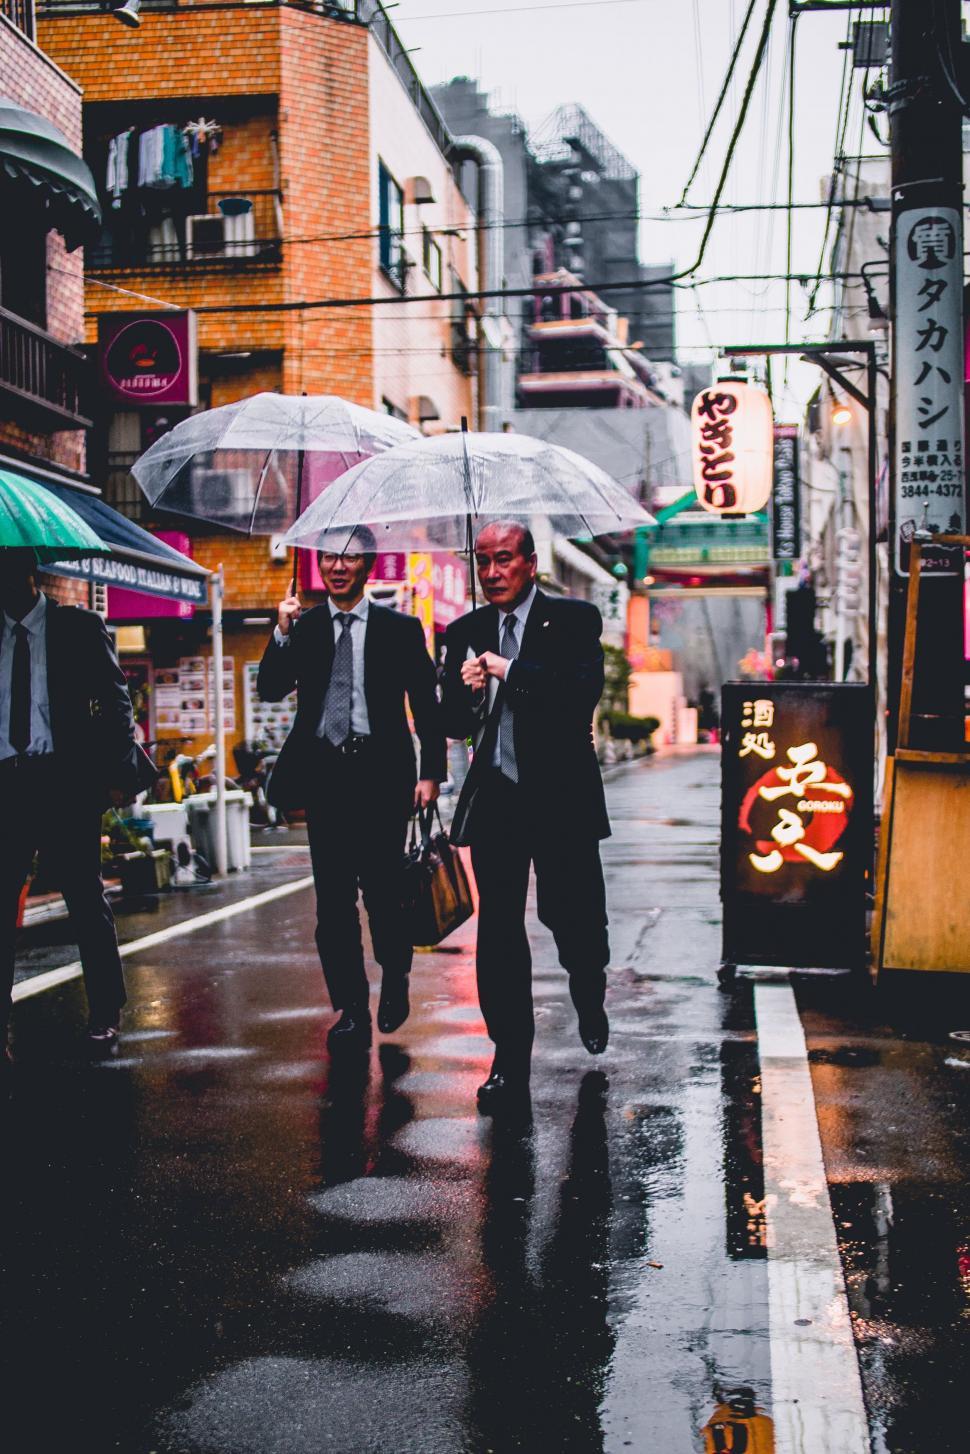 Free Image of Men Walking Down Street Holding Umbrellas 